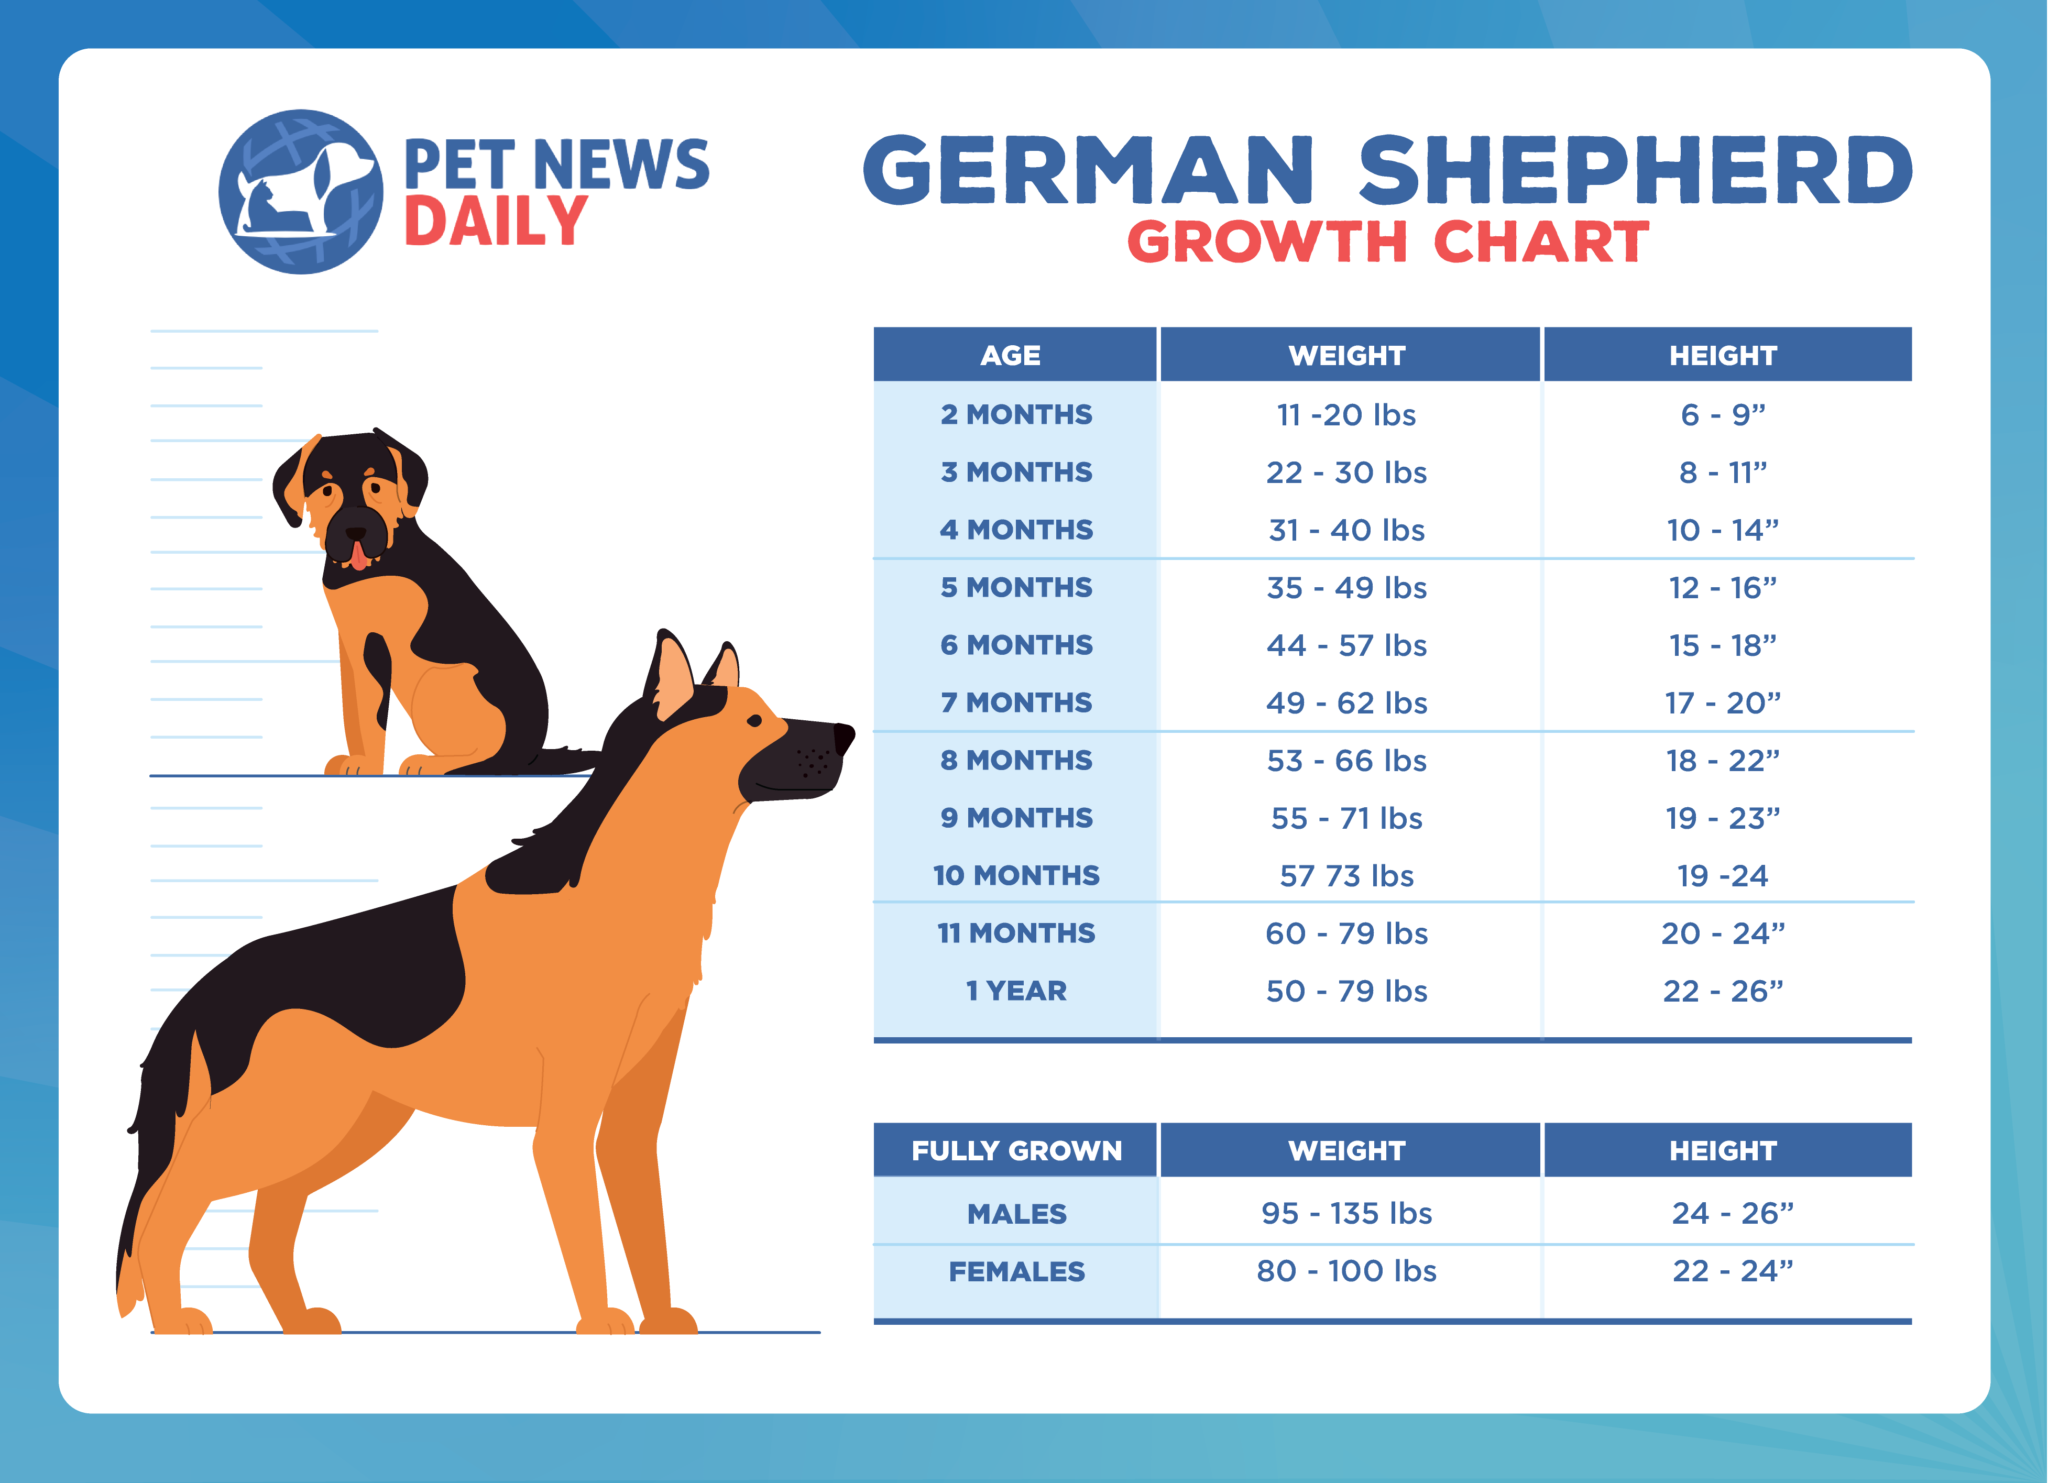 German Shepherd Growth Chart How Big Will Your German Shepherd Get